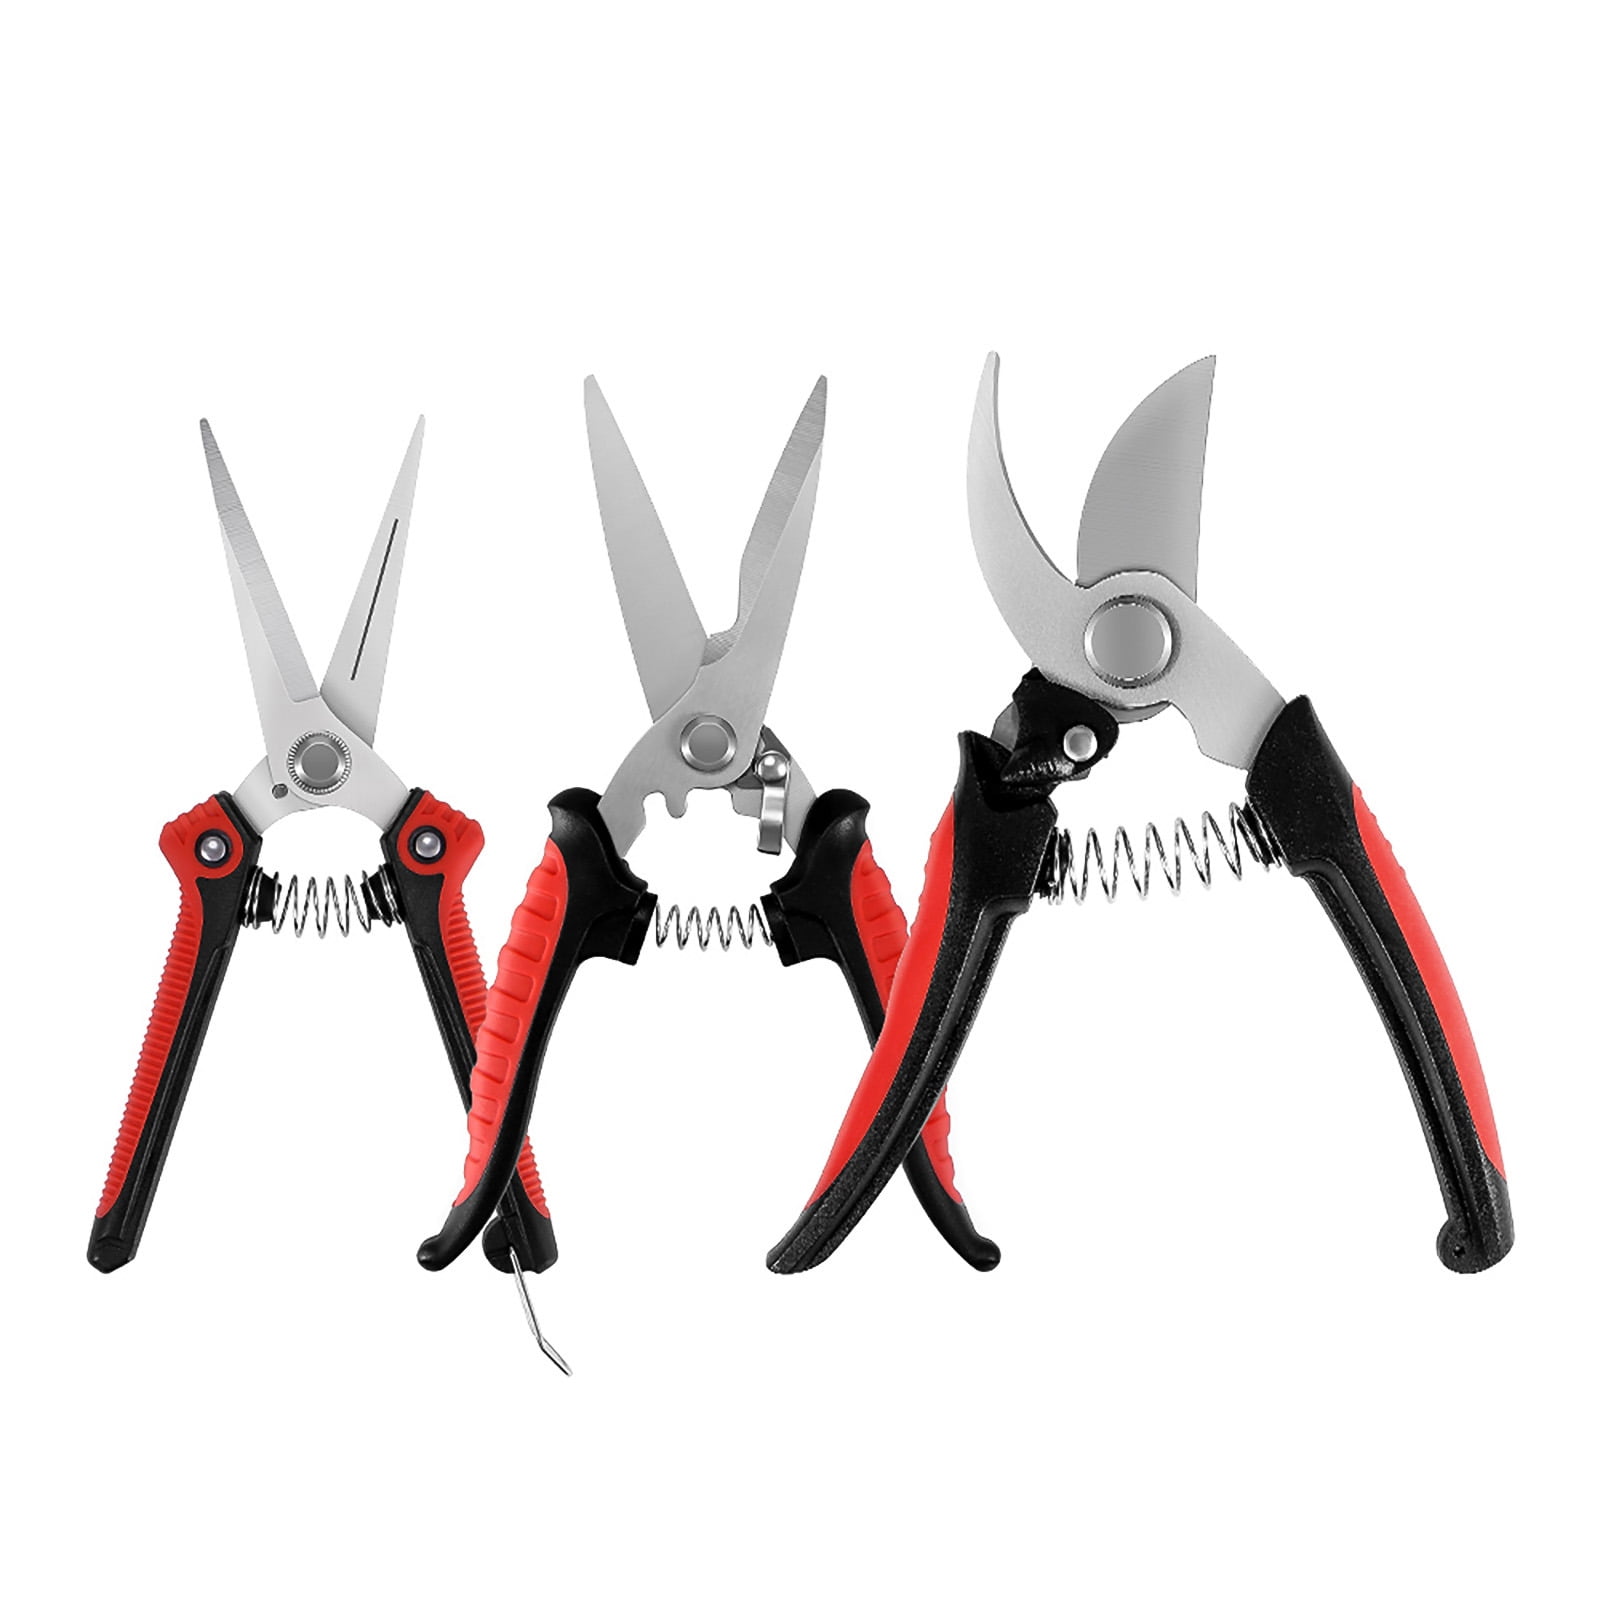 Resenkos Garden Scissors Set, Handheld Steel Gardening Pruning Shears